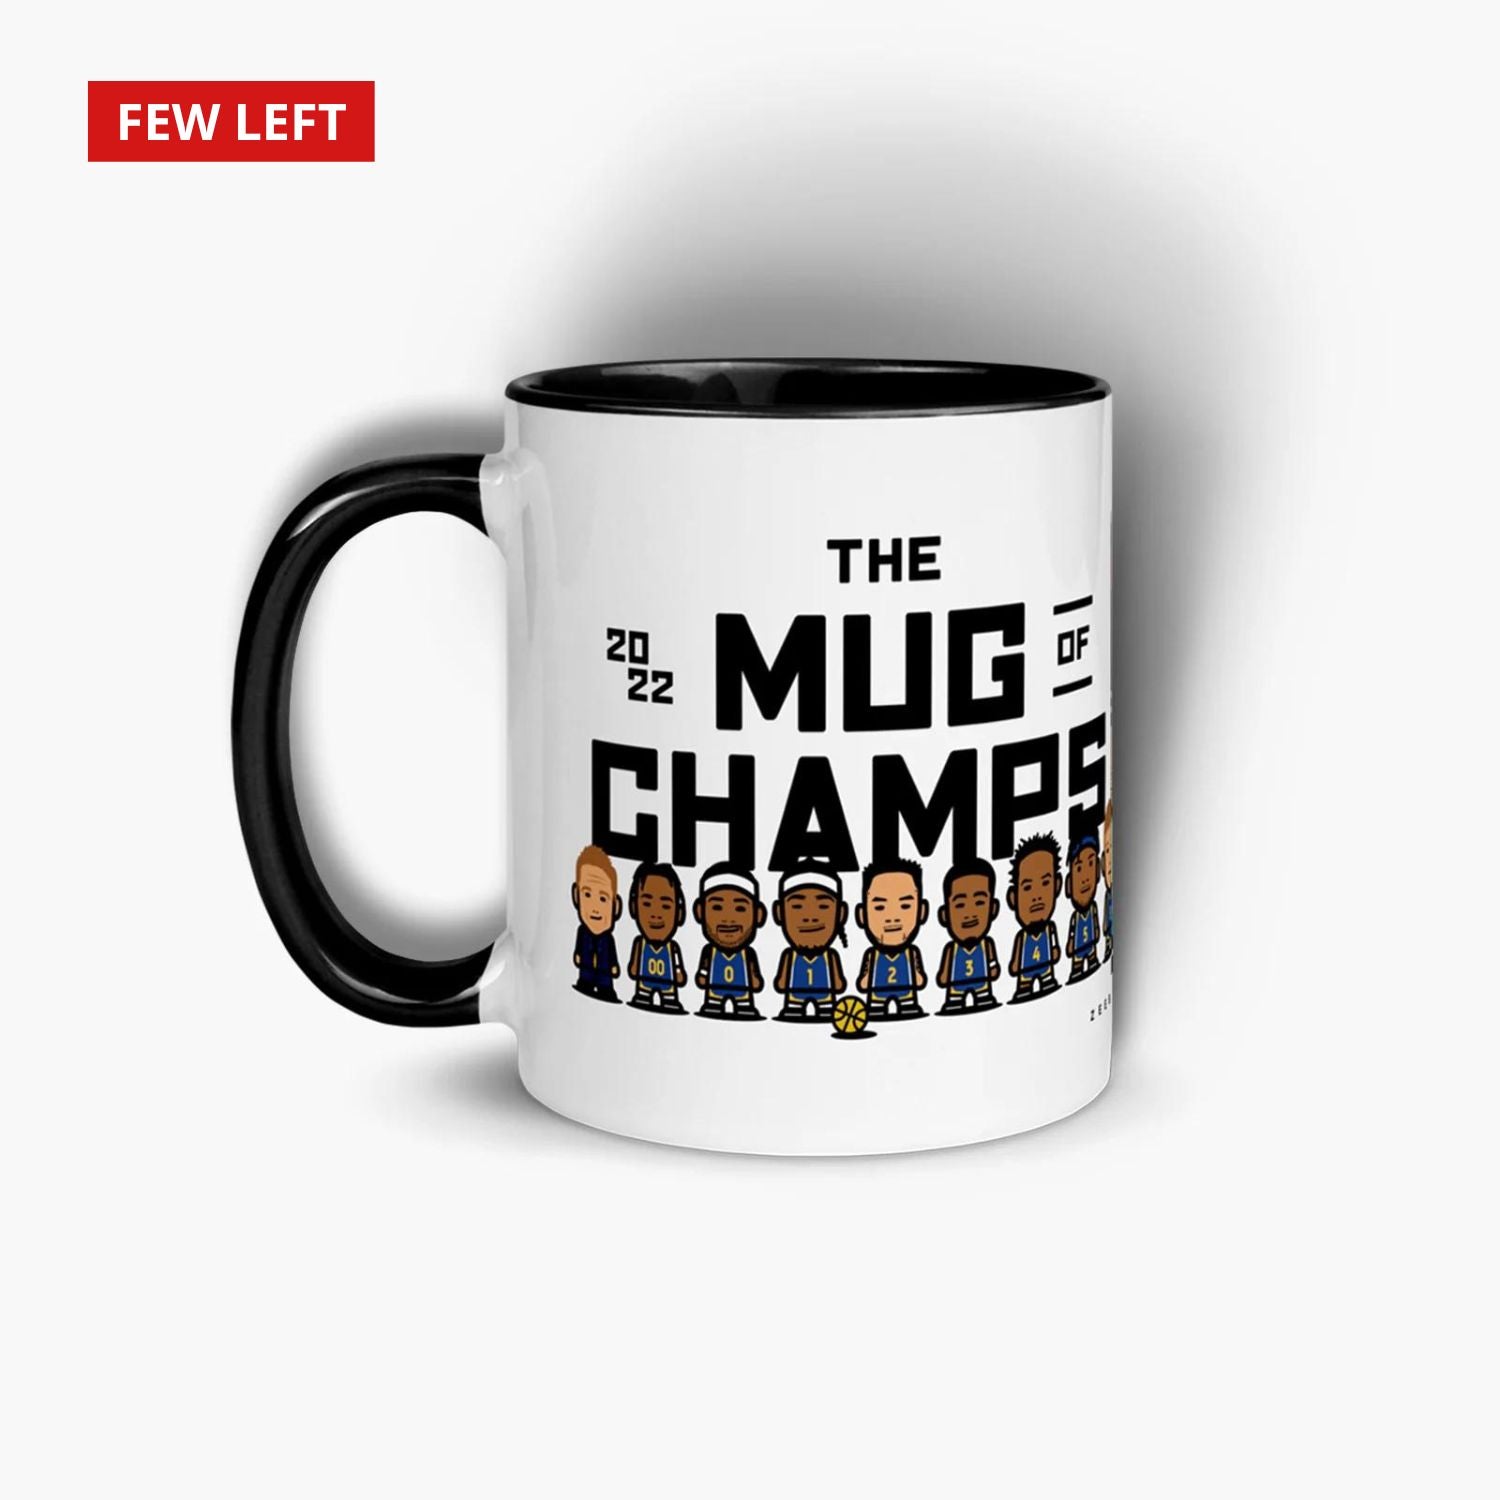 22Champs—11oz Mug—Mug of Champs